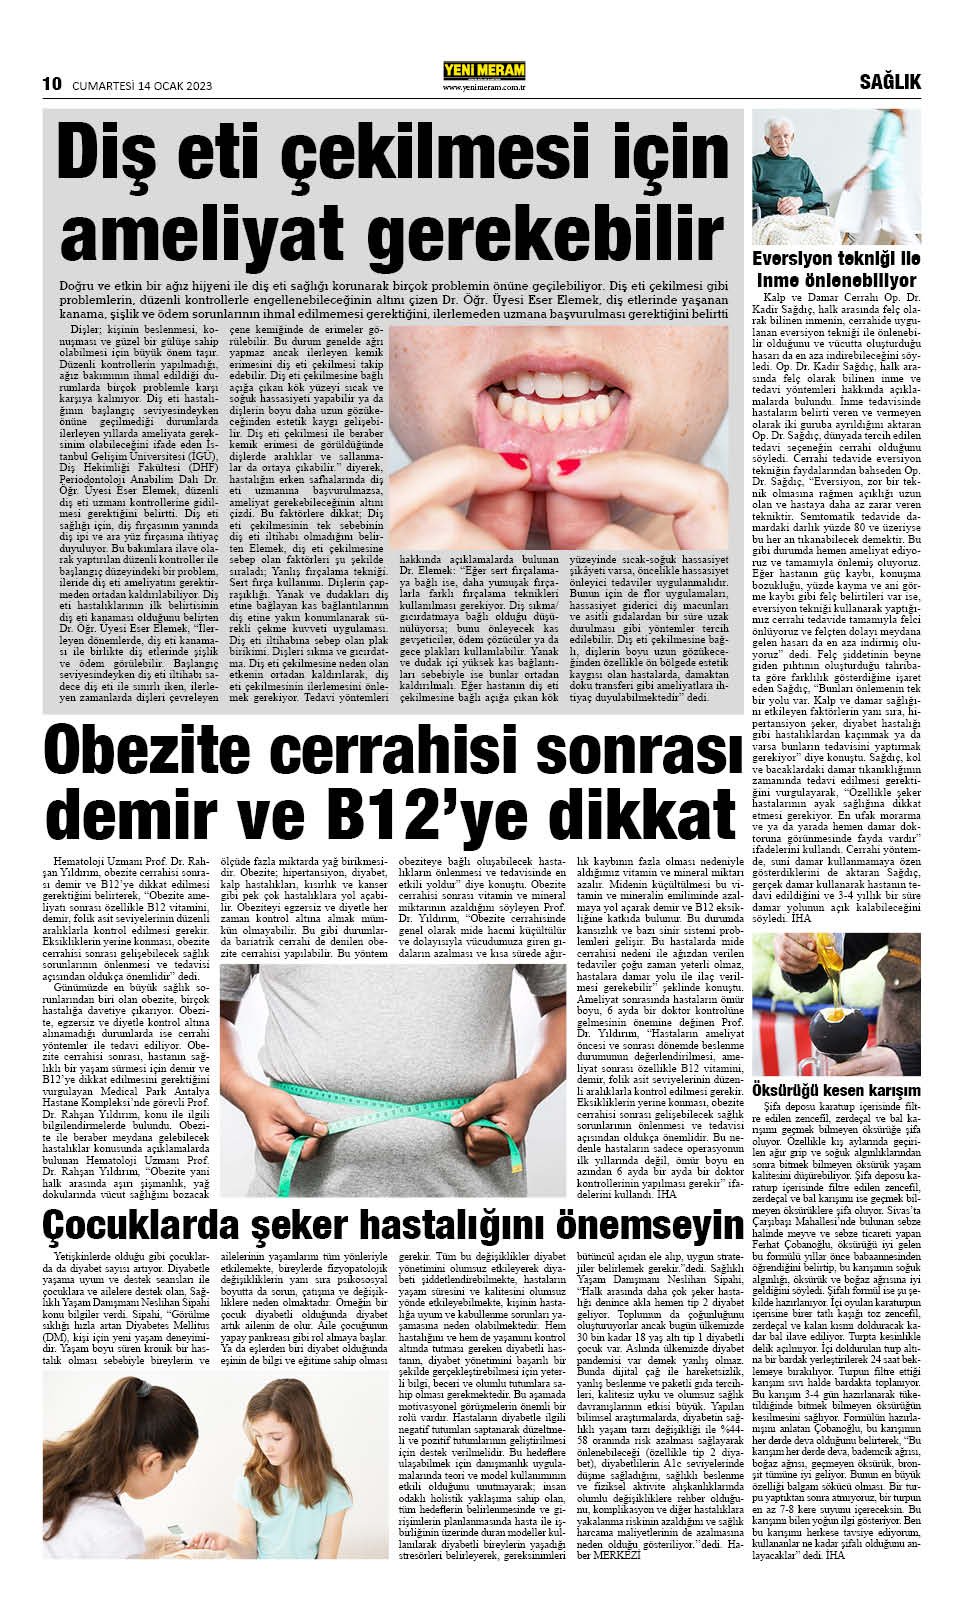 14 Ocak 2023 Yeni Meram Gazetesi